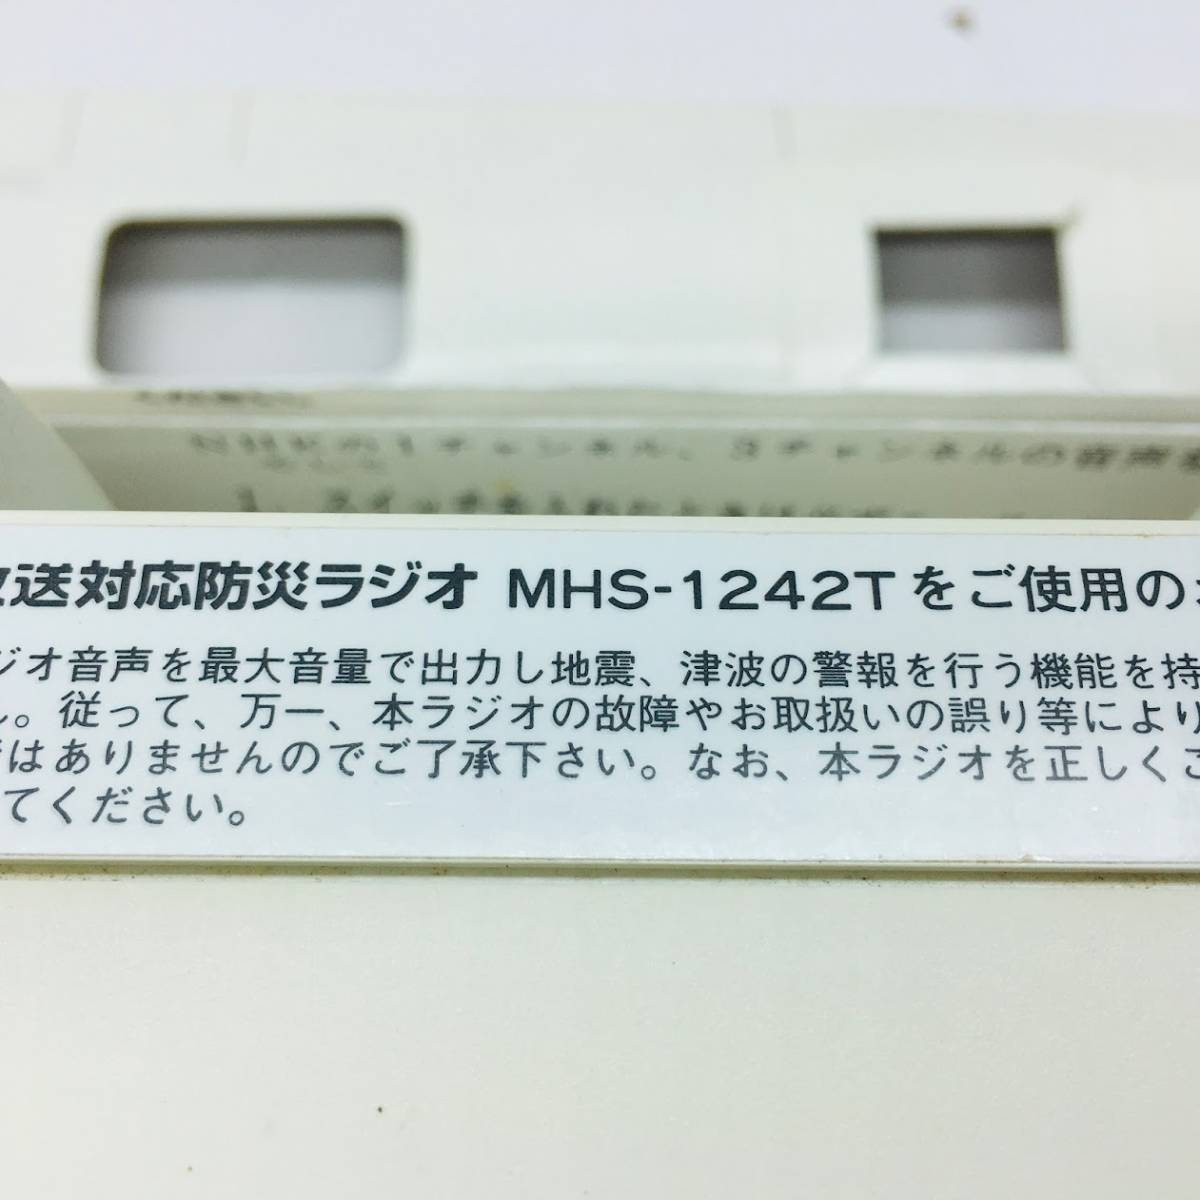 ニッポン放送対応防災ラジオ「セキュリオ」MHS-1242T USED ラジオとしても使用可ミュディーヒューマンサービス アダプタ(MHS-AD001)付き_画像6